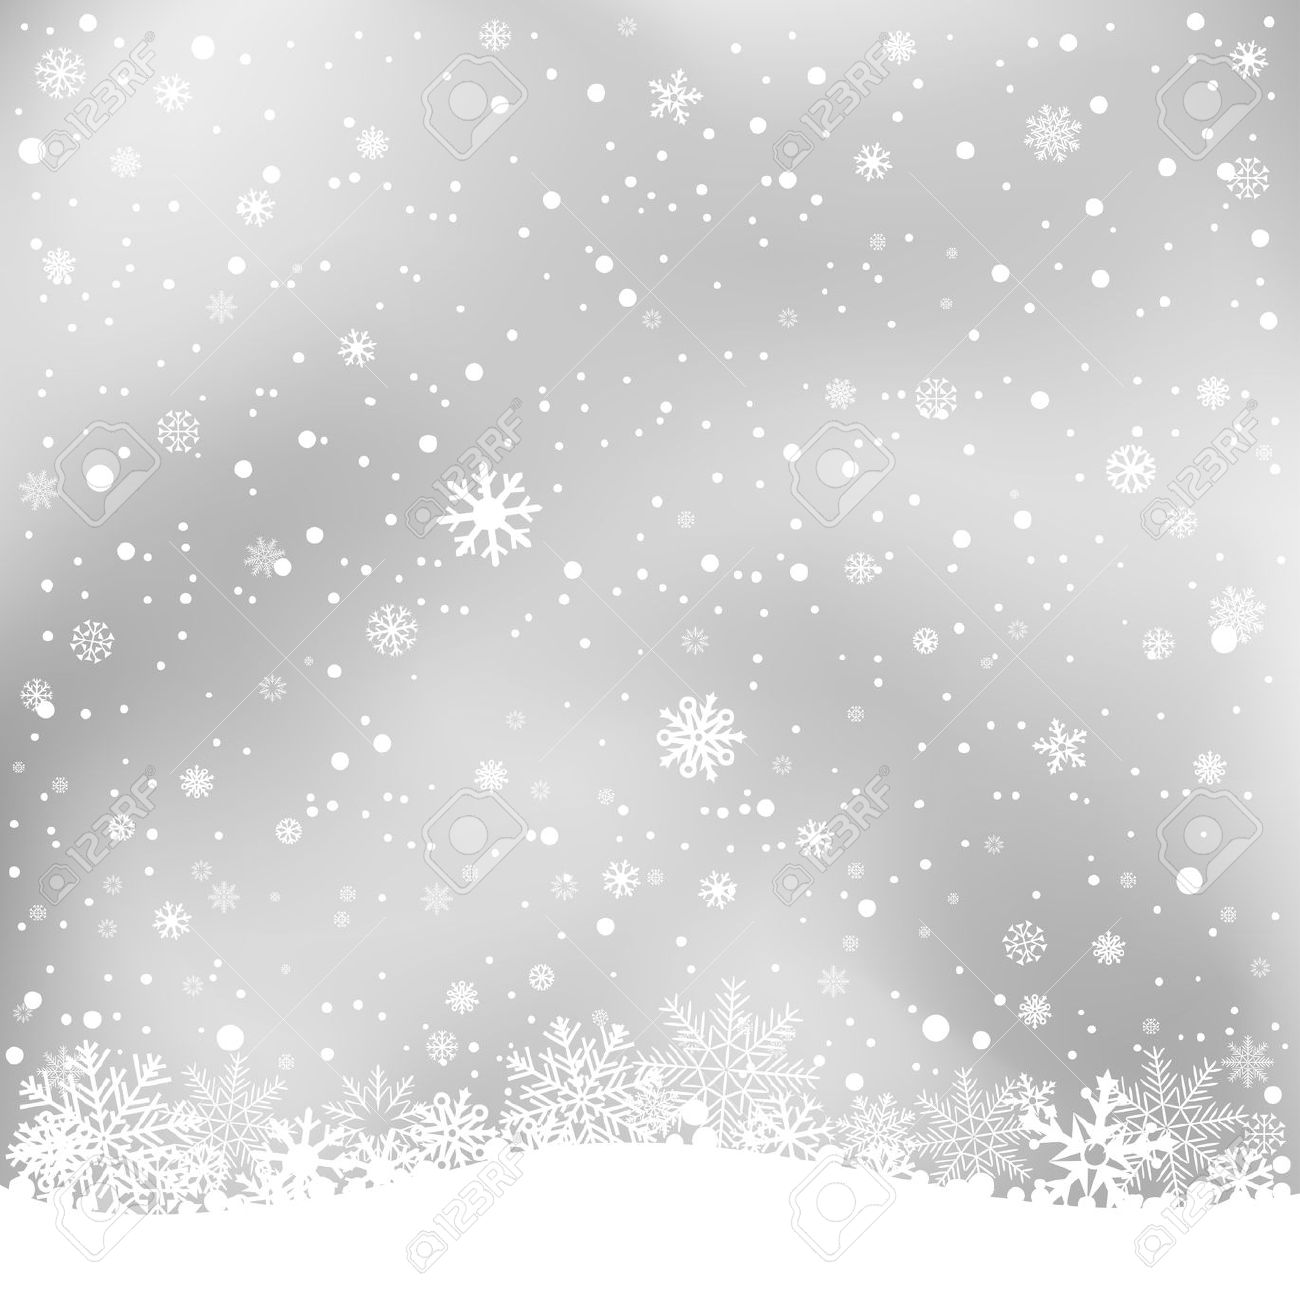 Snow clipart transparent background